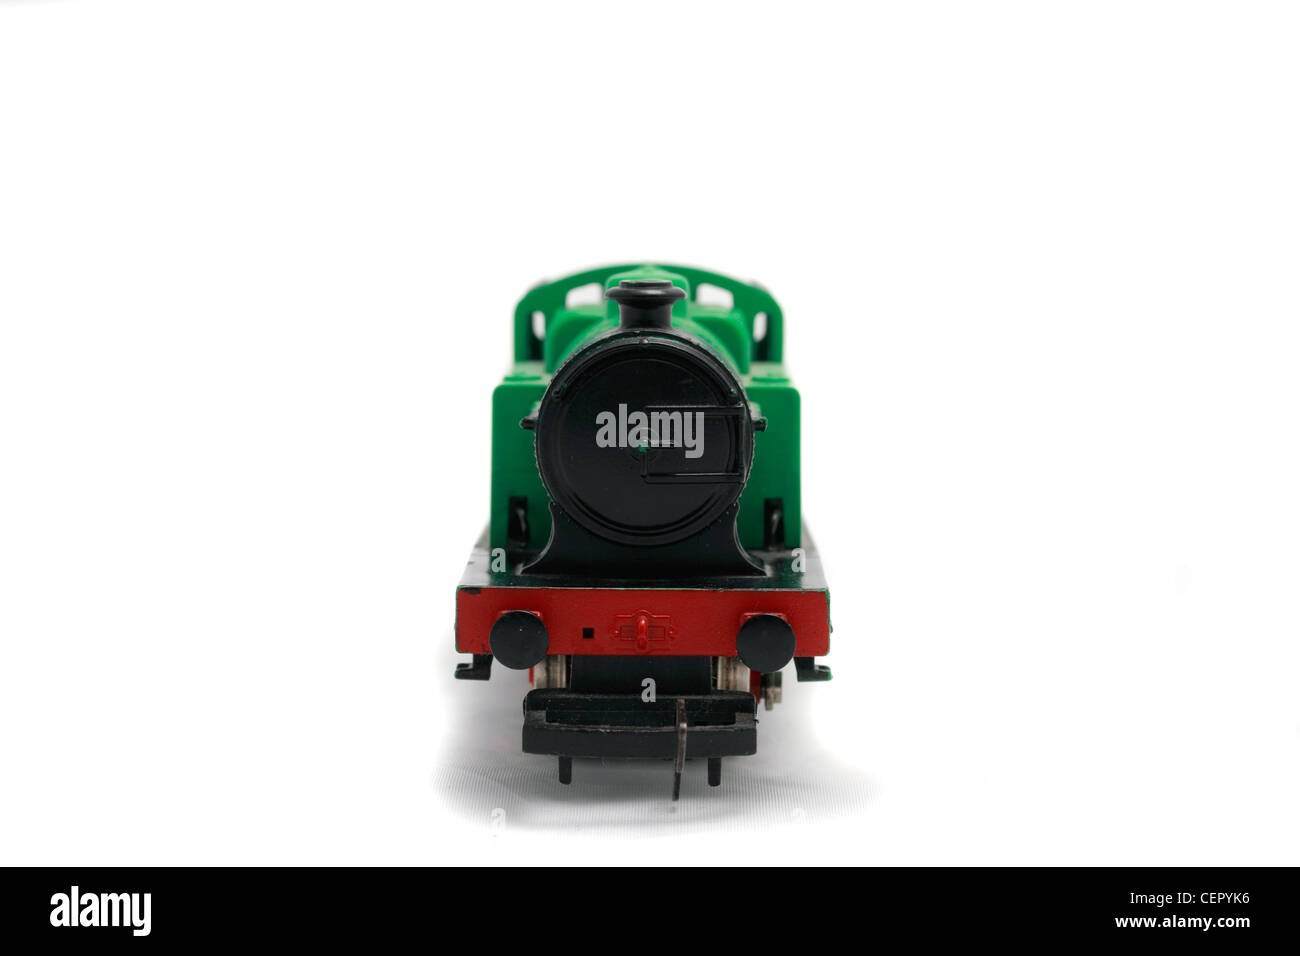 British Railways 0-4-0 locomotive à vapeur, 00 gauge Hornby trains train miniature Banque D'Images